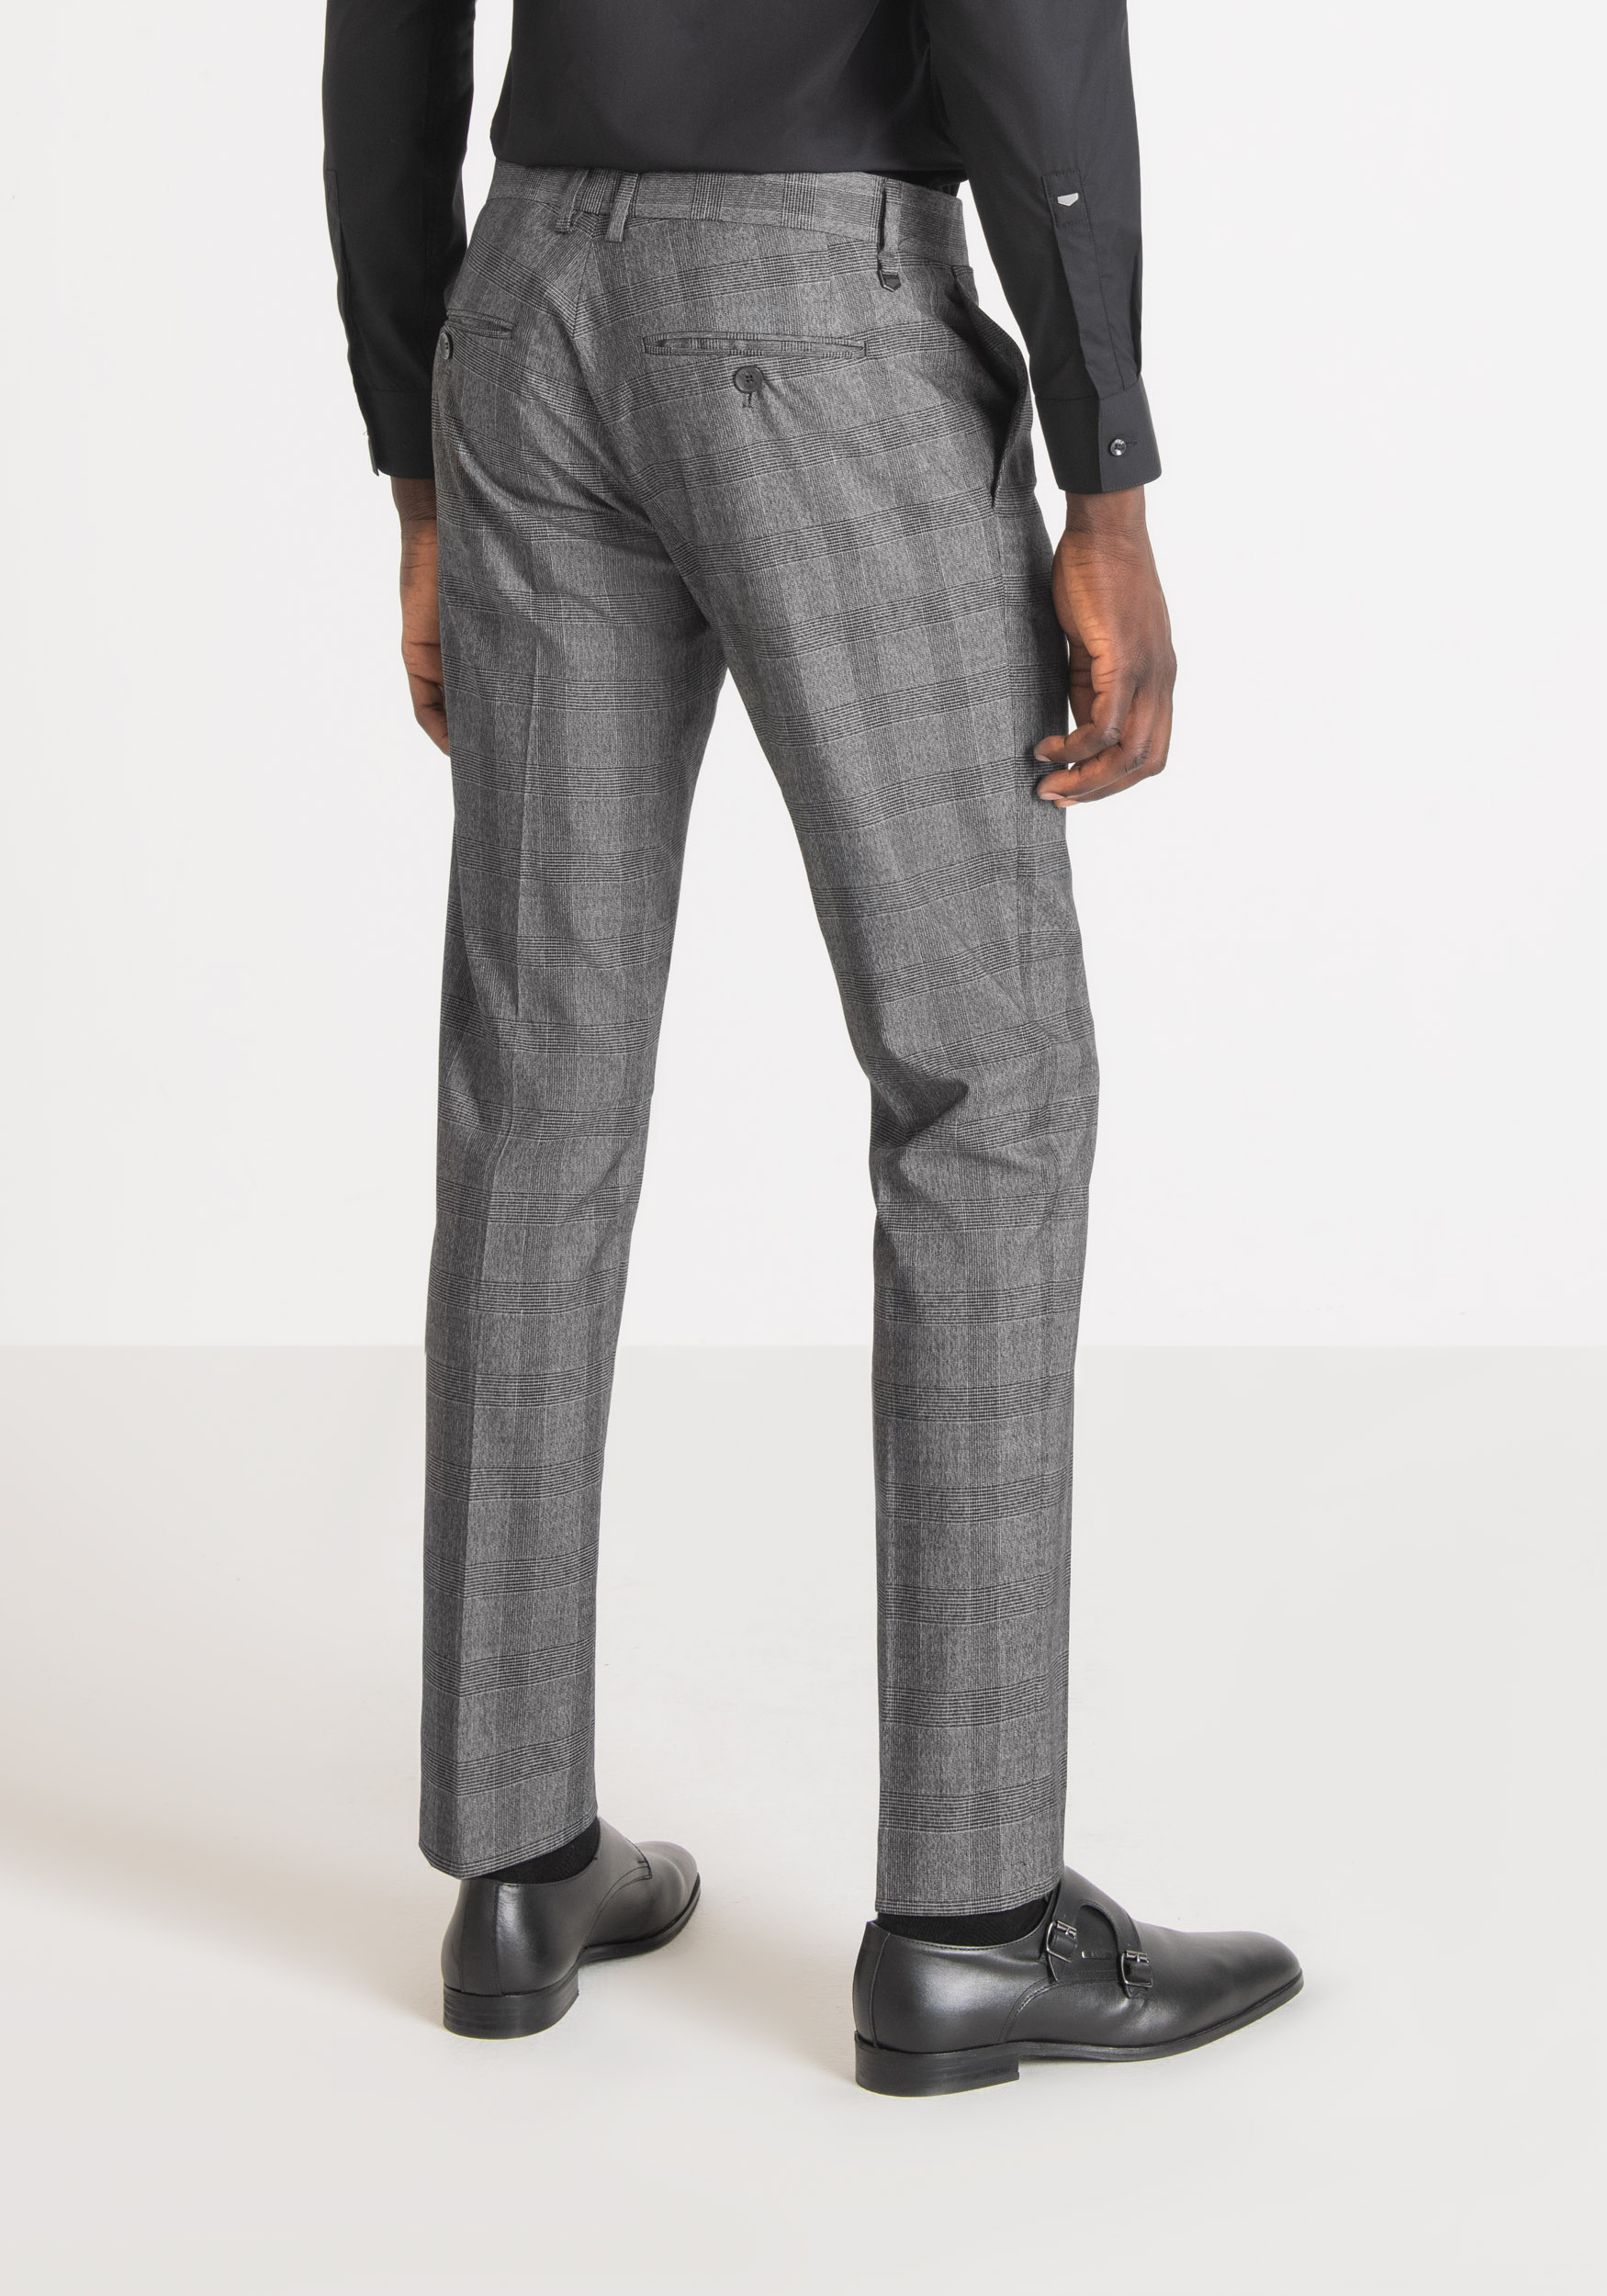 Antony Morato Pantalon Slim Fit Bonnie En Tissu Elastique Avec Motif Prince De Galles Noir | Homme Pantalons